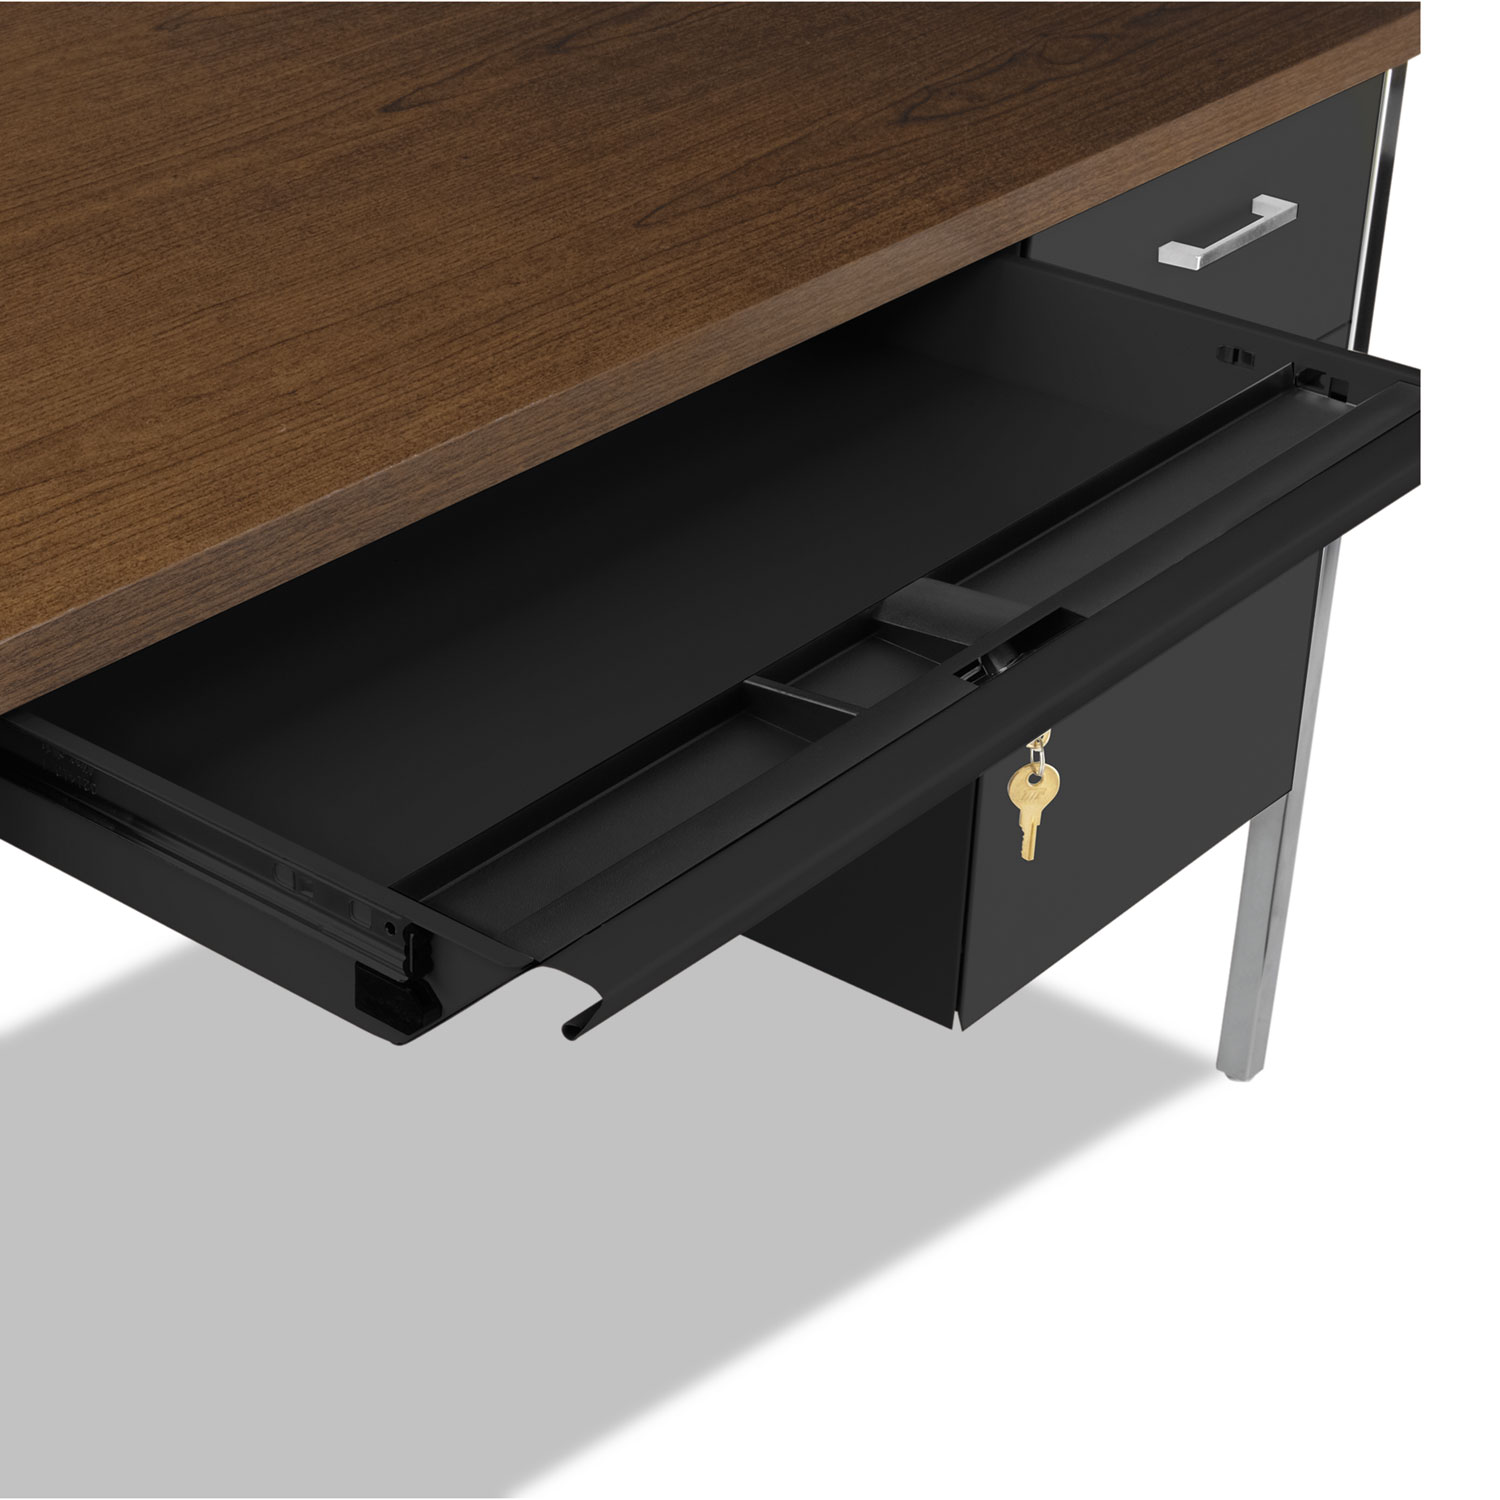 Double Pedestal Steel Desk, Metal Desk, 72w x 36d x 29-1/2h, Mocha/Black